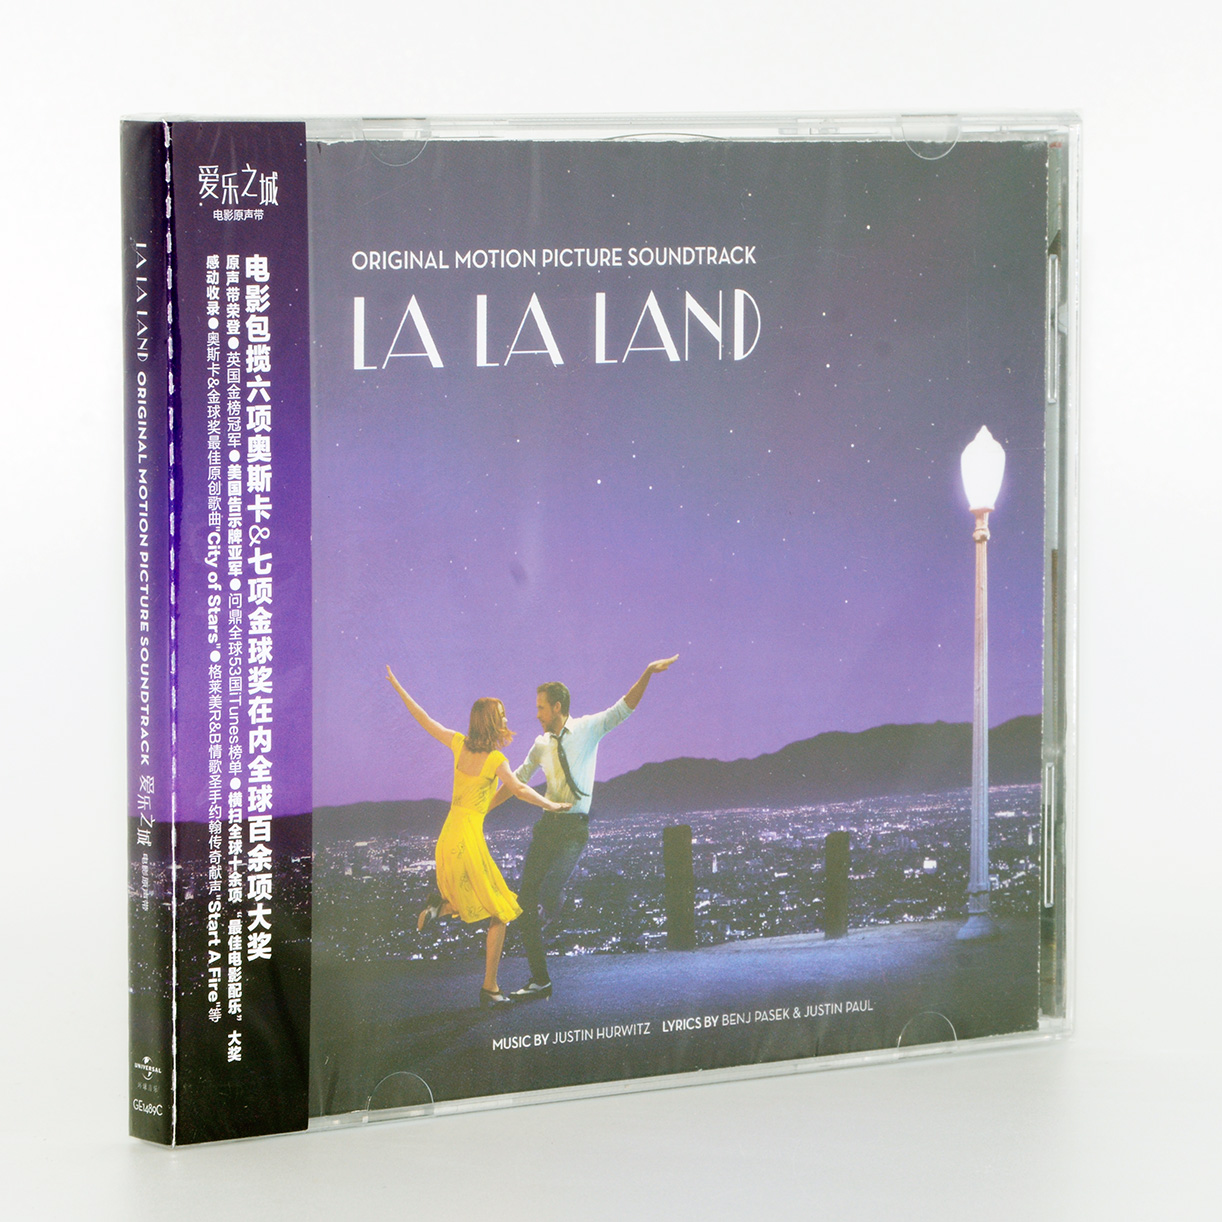 原装正版唱片 La La Land OST 爱乐之城电影原声带音乐歌曲 CD碟